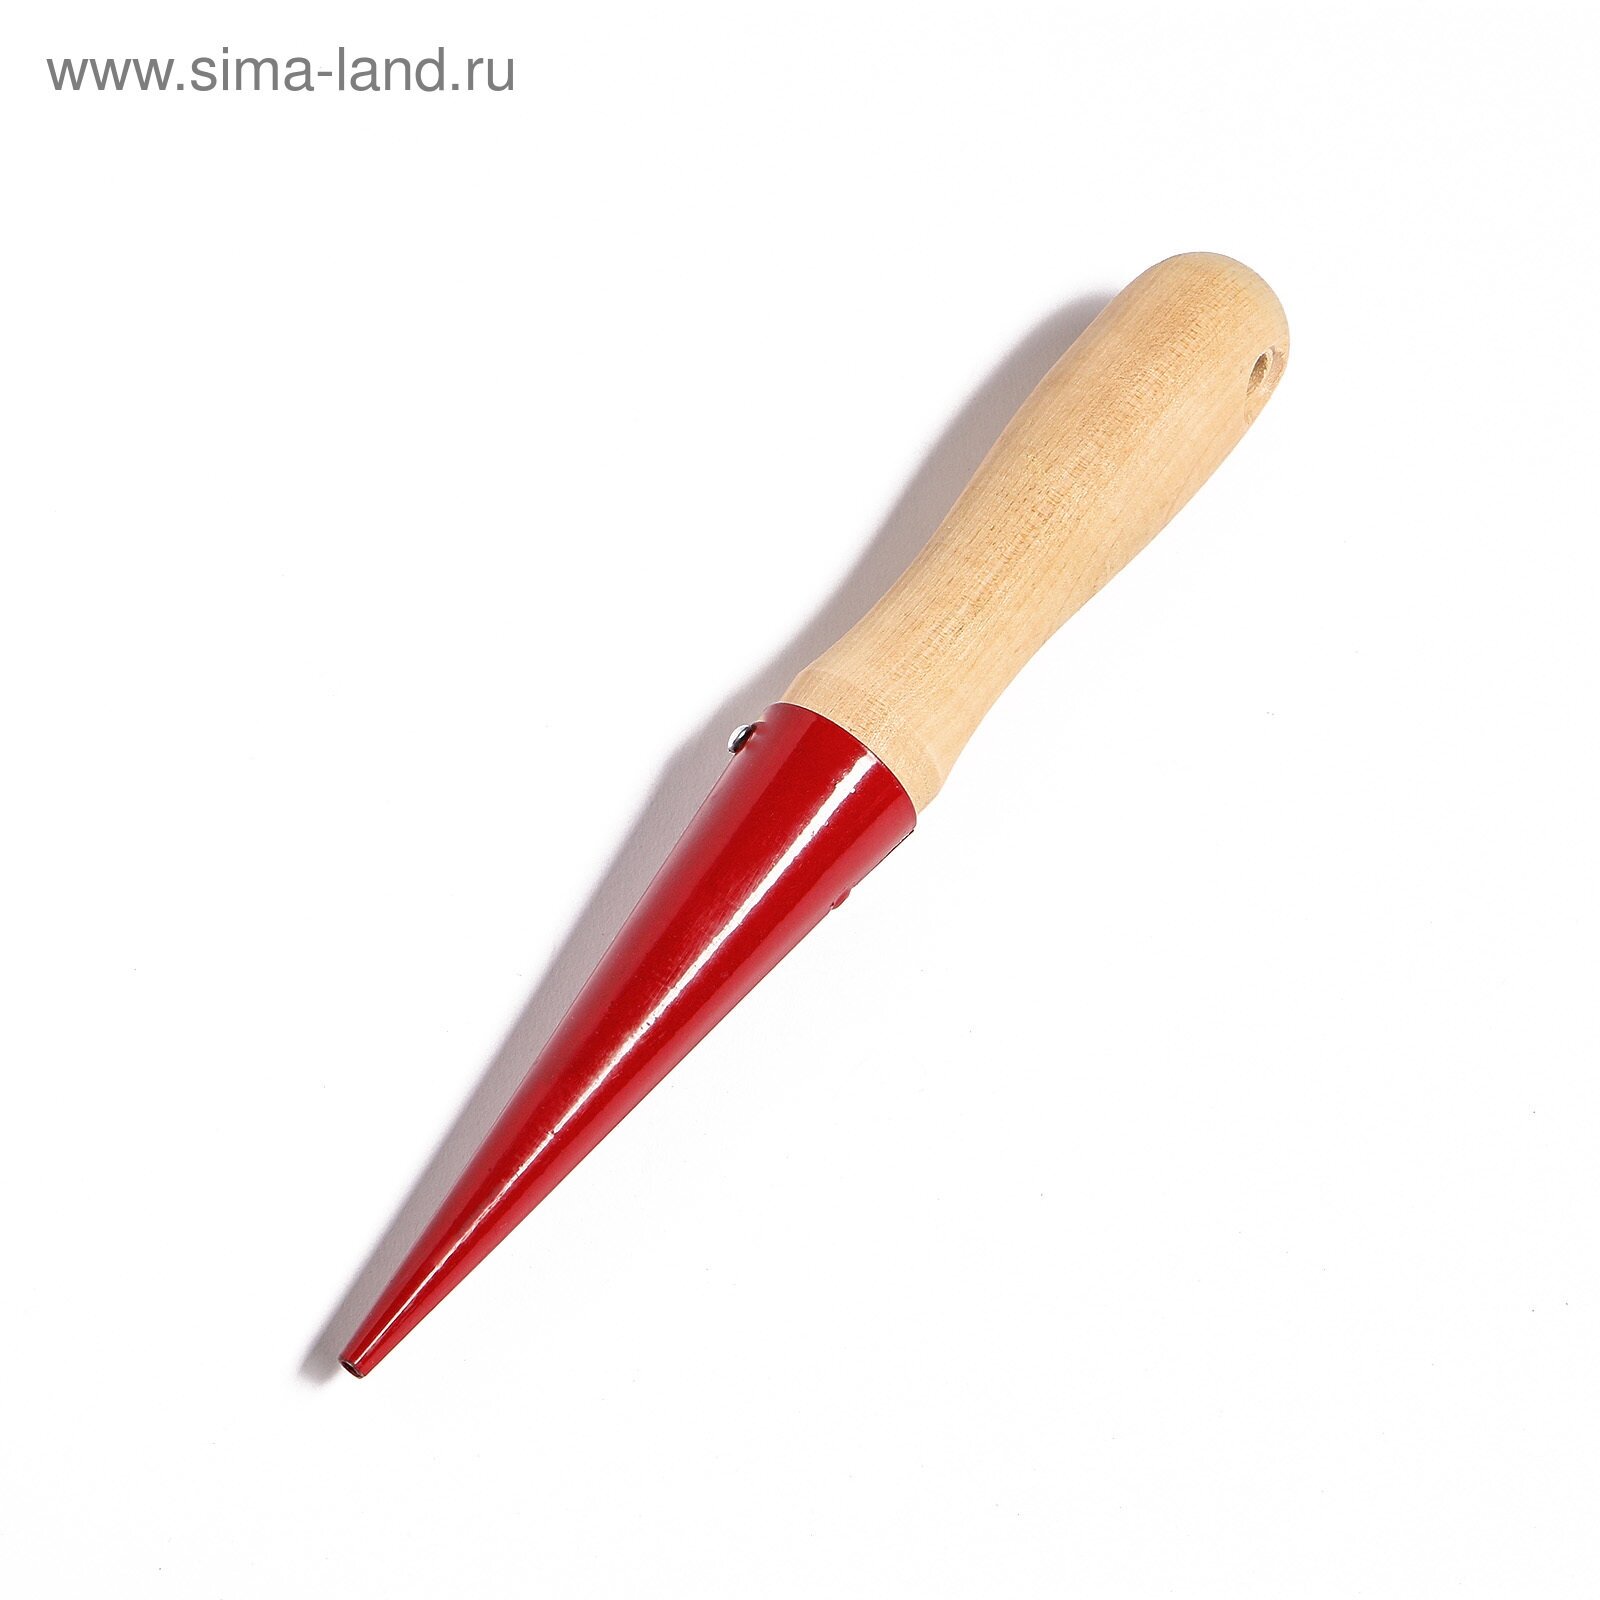 Конус посадочный, длина 25 см, деревянная ручка